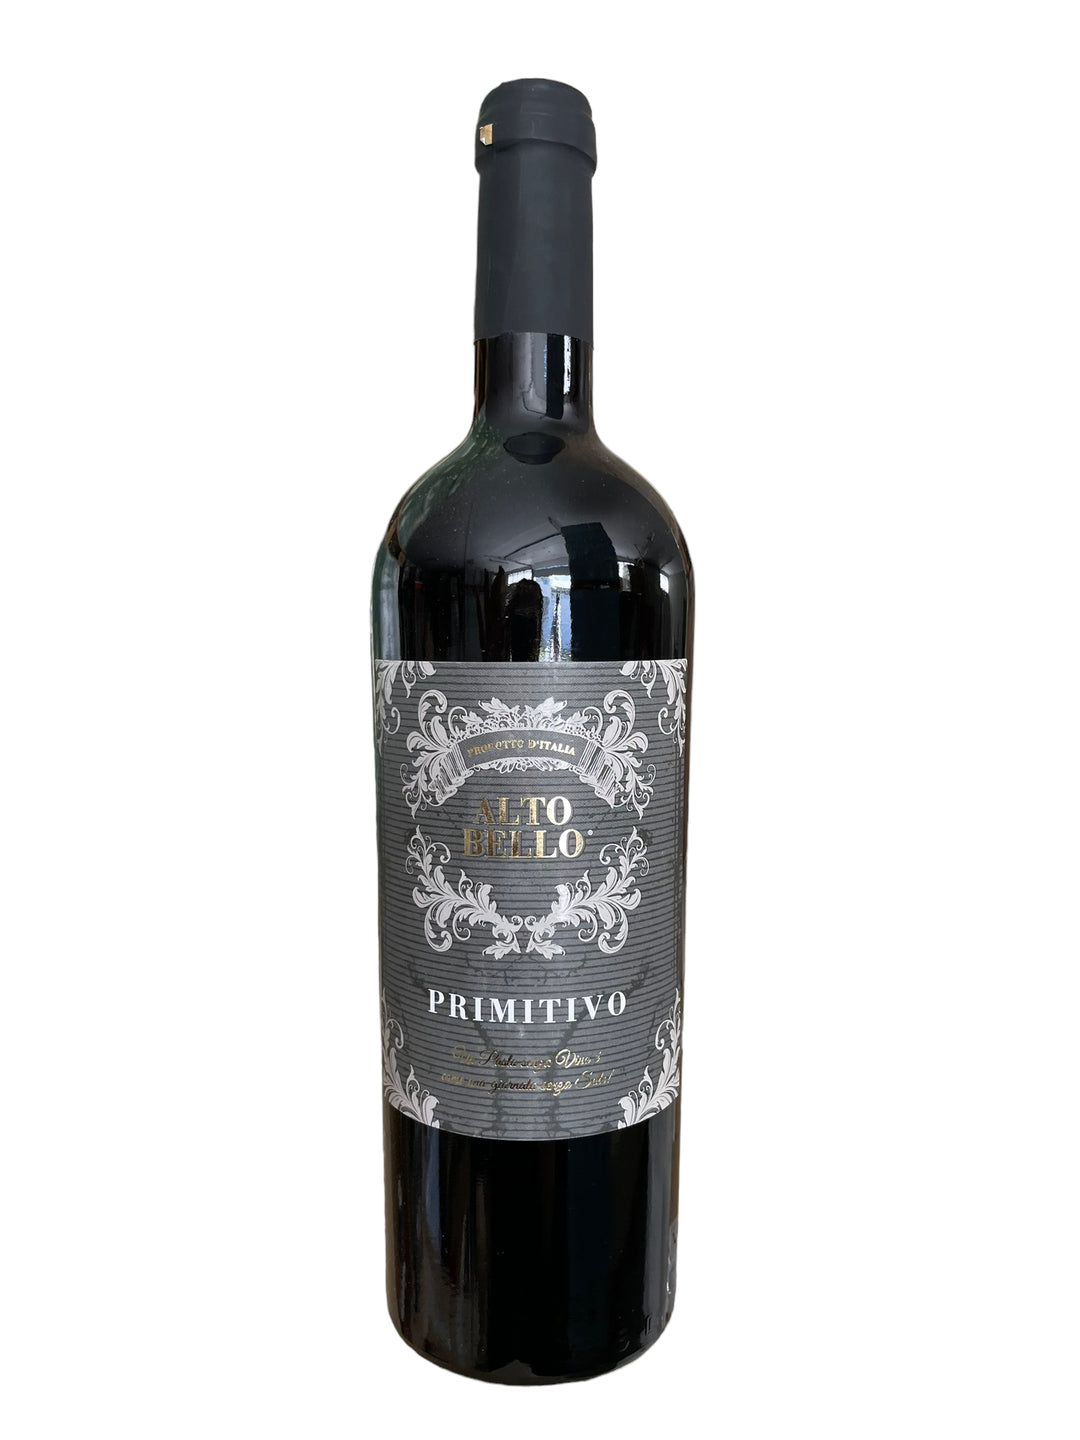 Crveno vino ALTO BELLO PRIMITIVO 0,75l